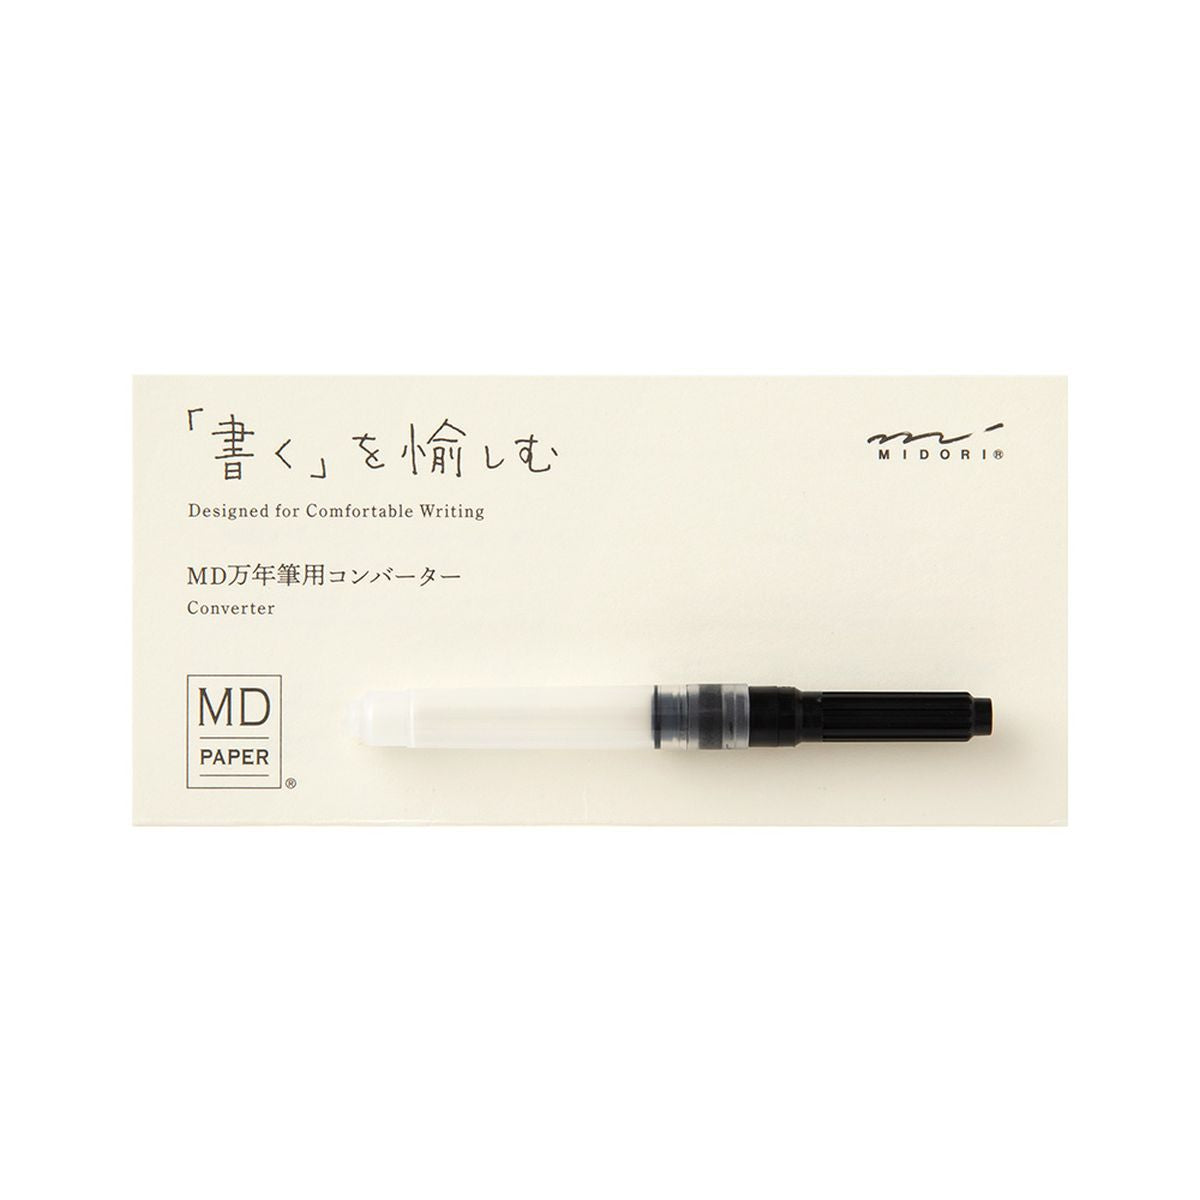 Midori converter for MD fountain pens